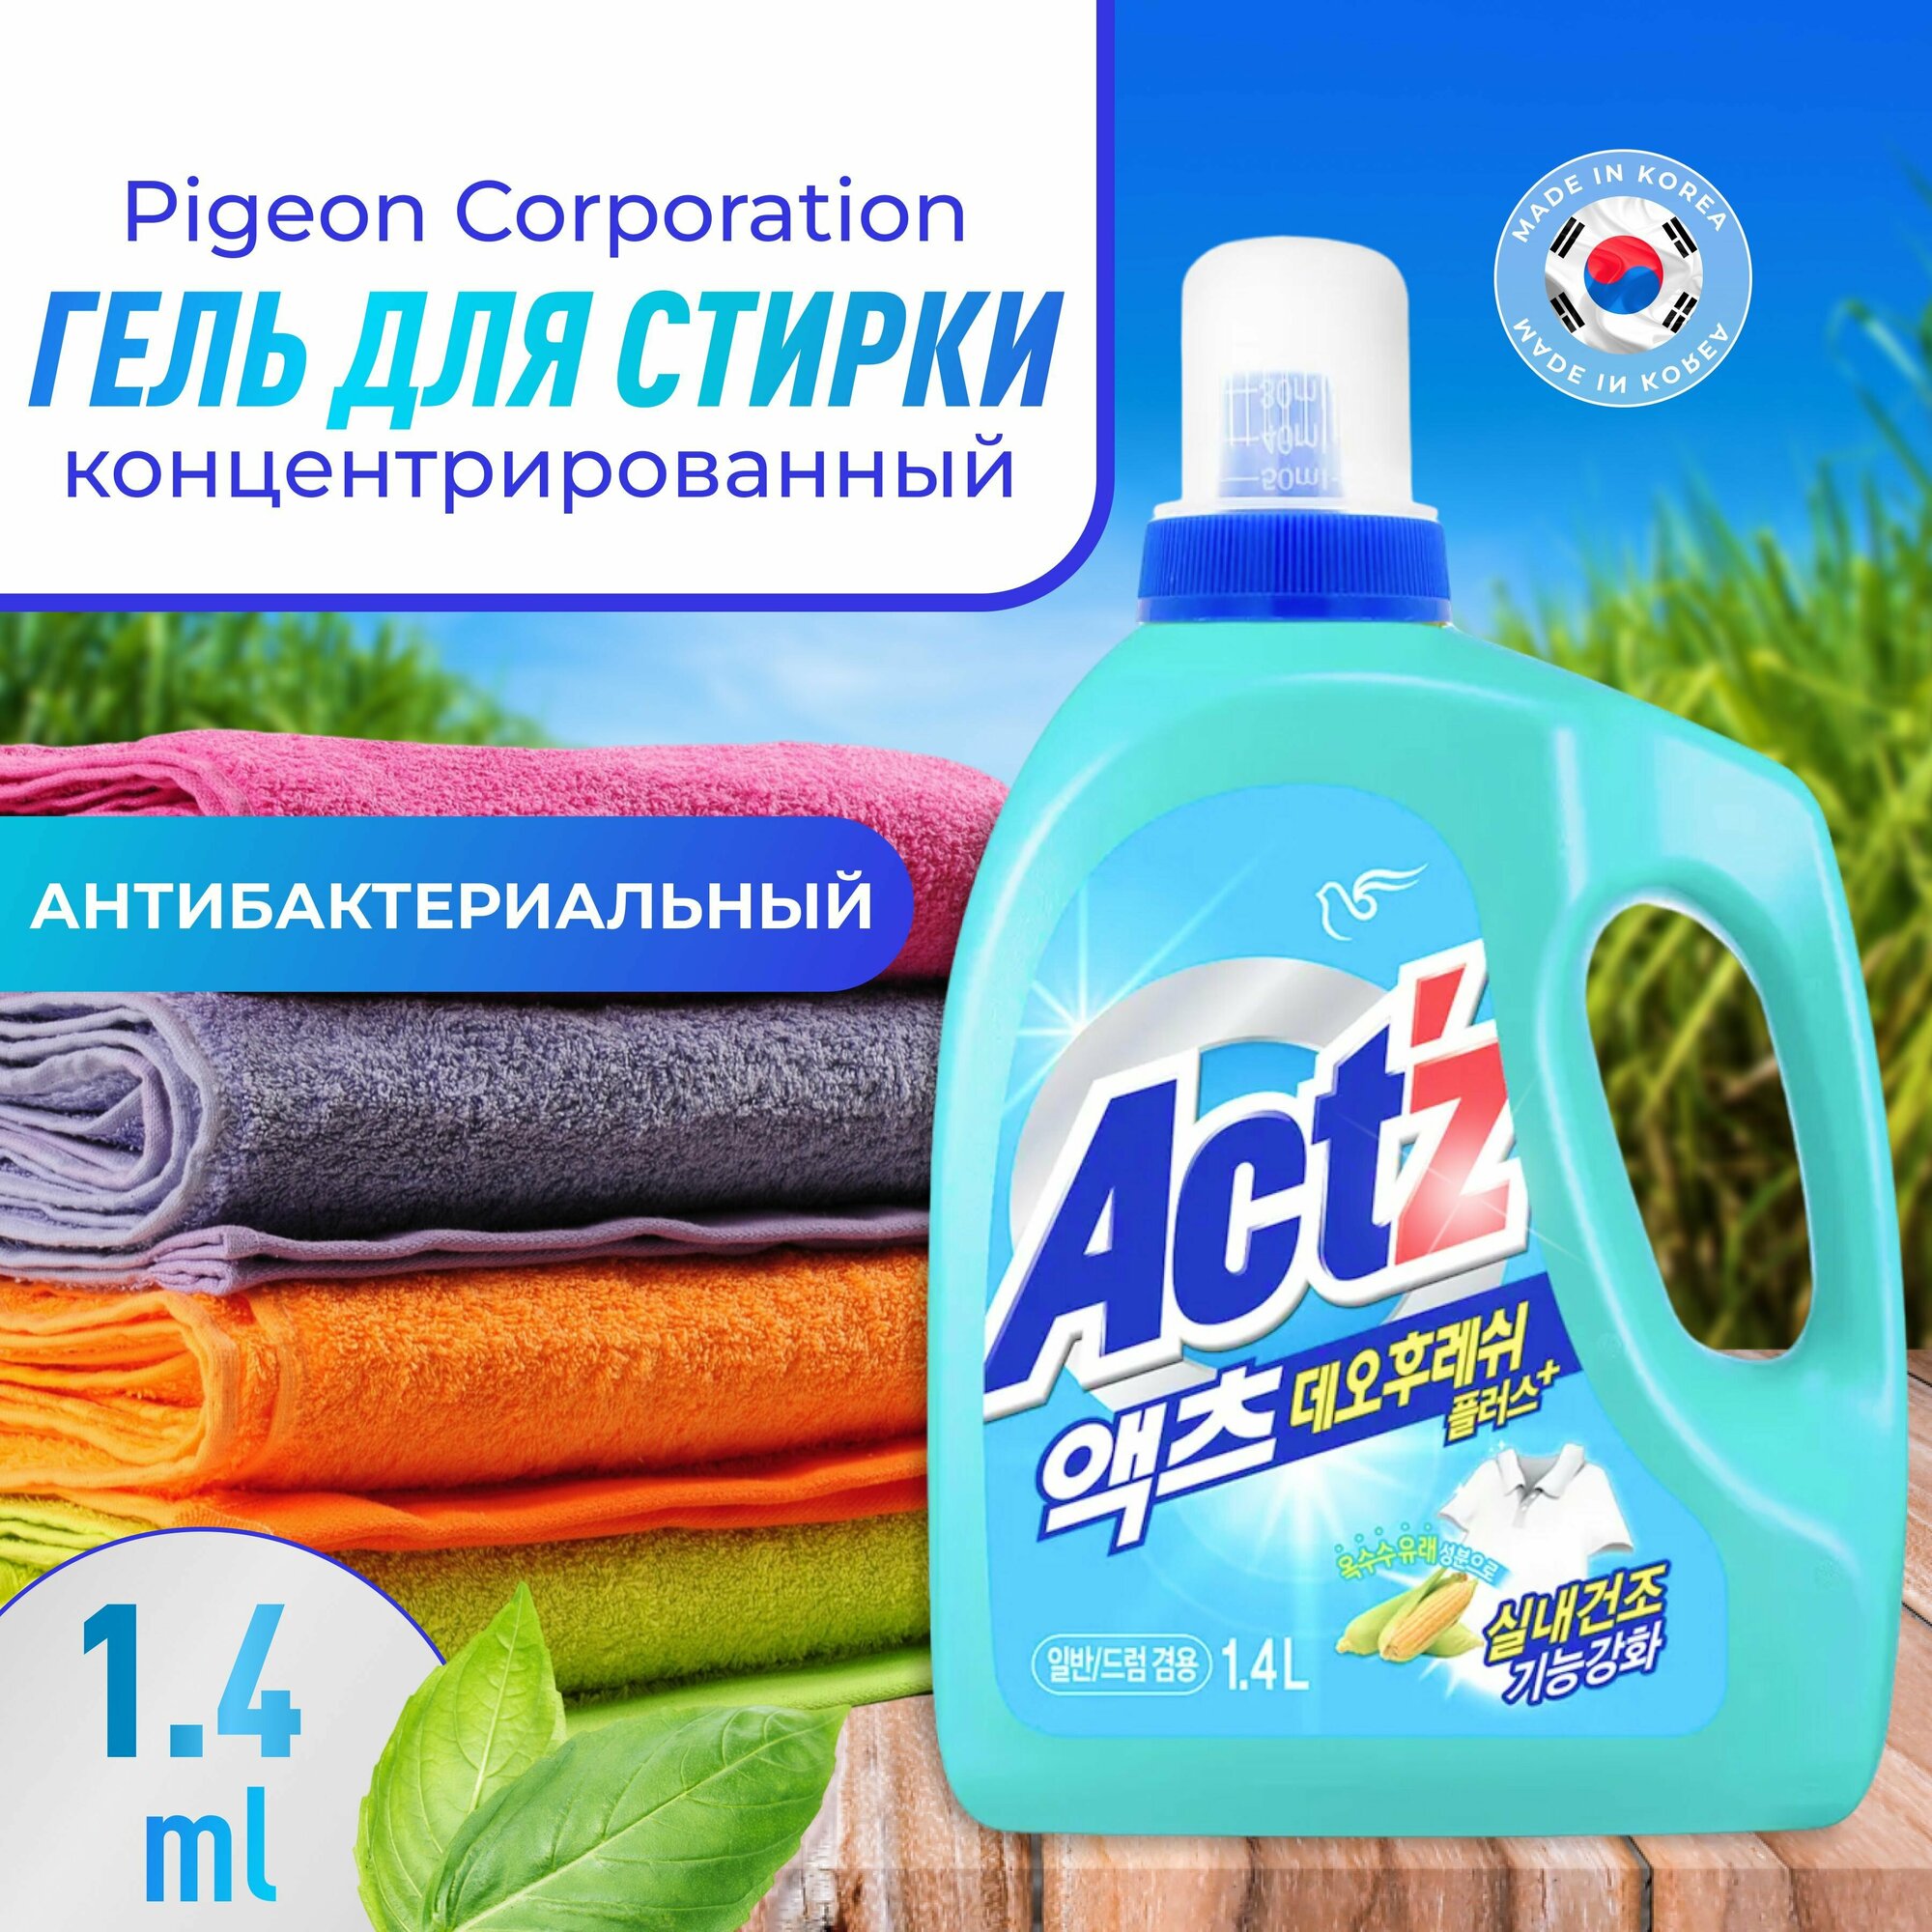 Pigeon Corporation Концентрированный гель для стирки белья ACT'Z Deo Fresh (быстрая сушка), антибактериальный, 1,4 л